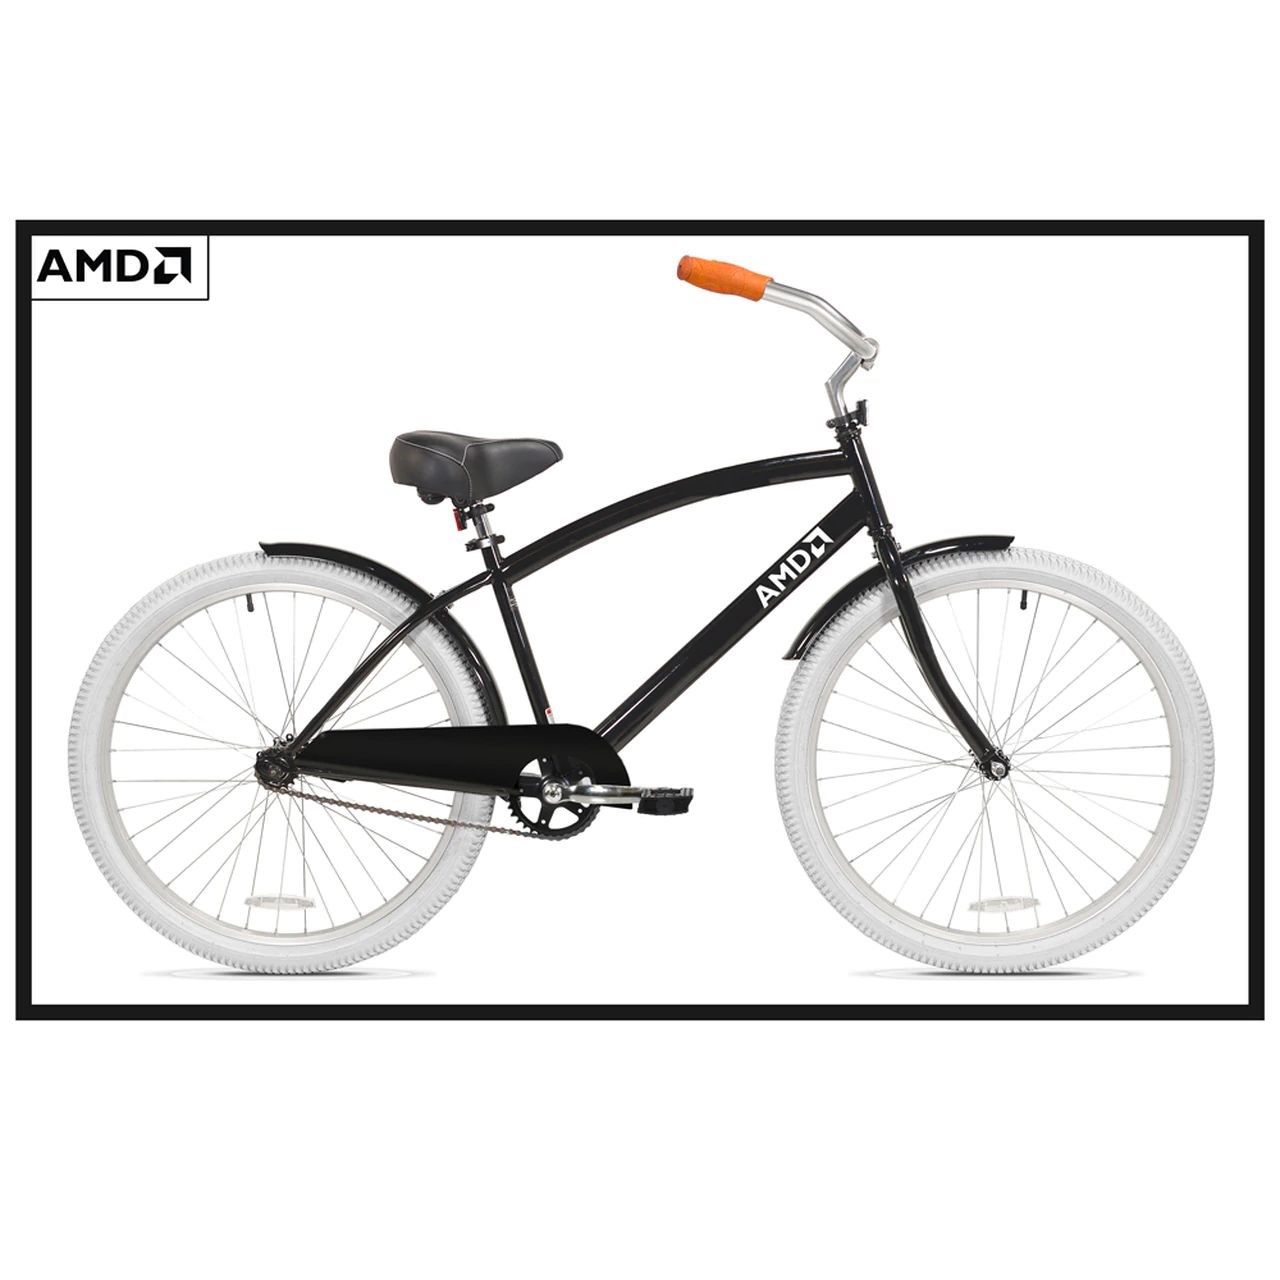 AMD bisikletler satışa sunuldu